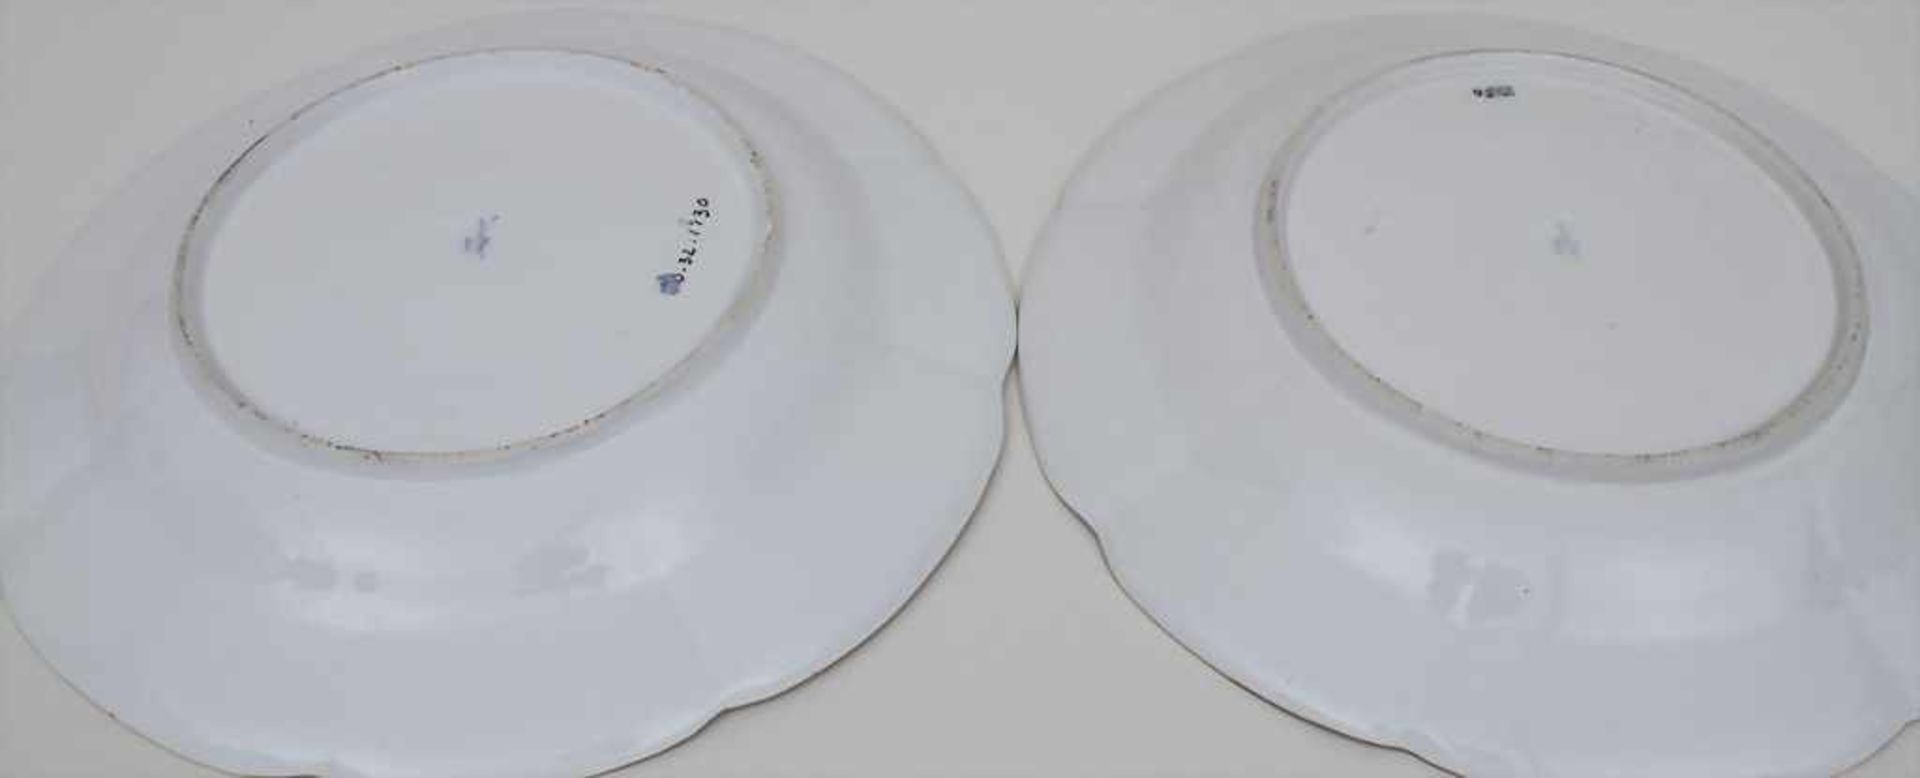 2 Teller mit Blumenmalerei / 2 plates with flowers, Meissen, um 1800 Material: Porzellan, - Bild 2 aus 2